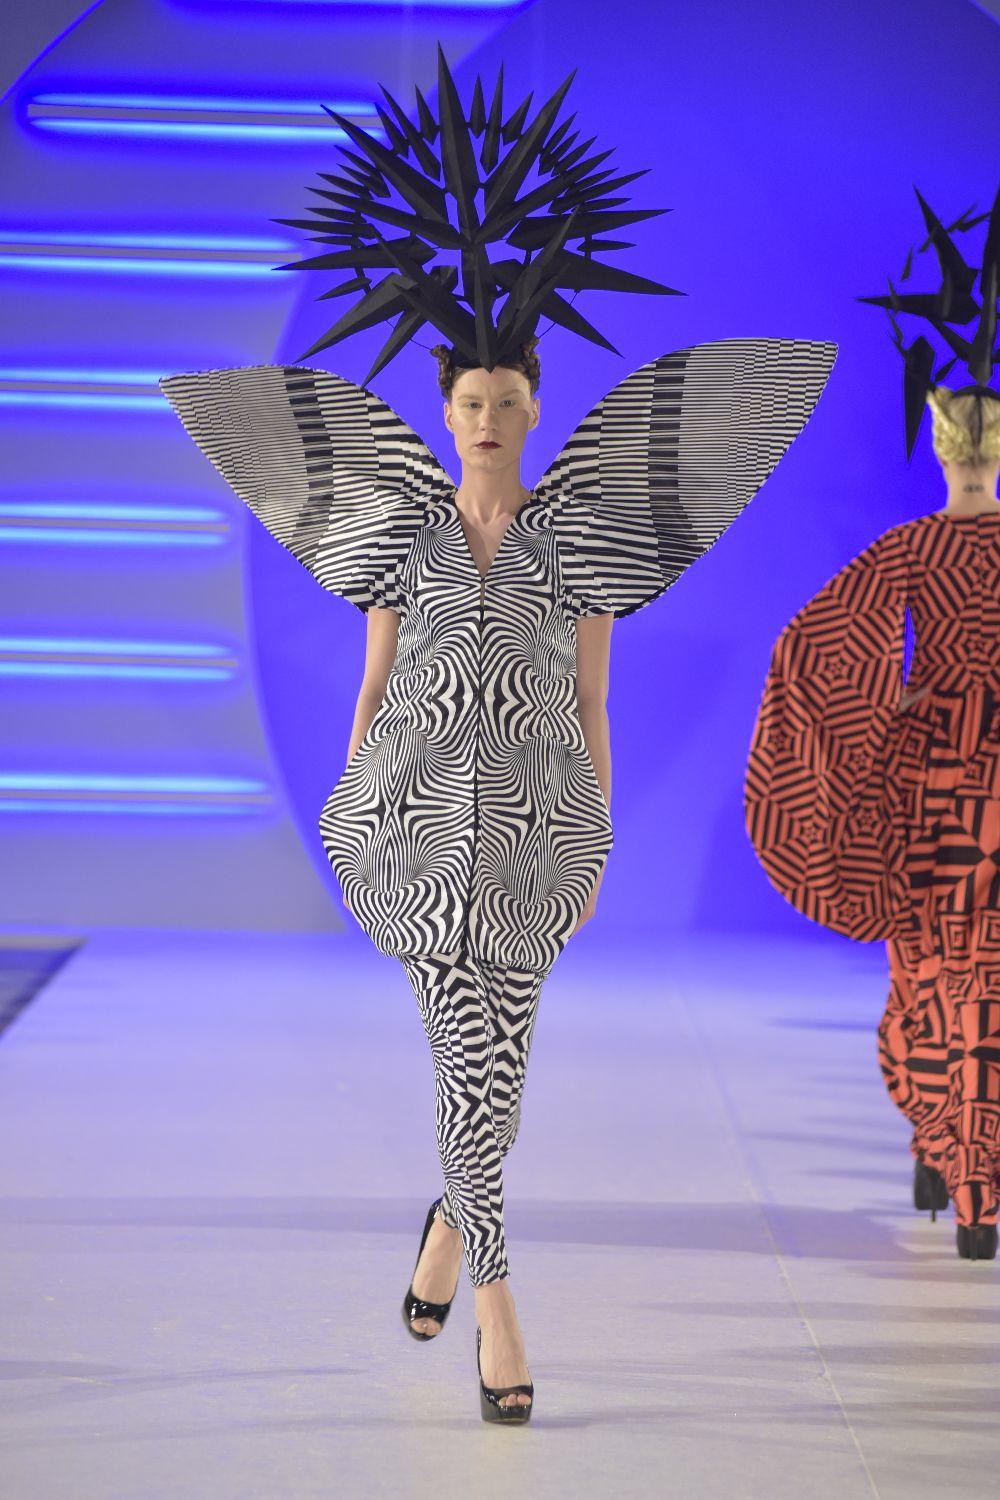 Ovogodišnjom kolekcijom koju je predstavila na Fashion Week-u, Ivana Pilja je još jednom oduševila sve prisutne. Pogledajte o čemu je reč.